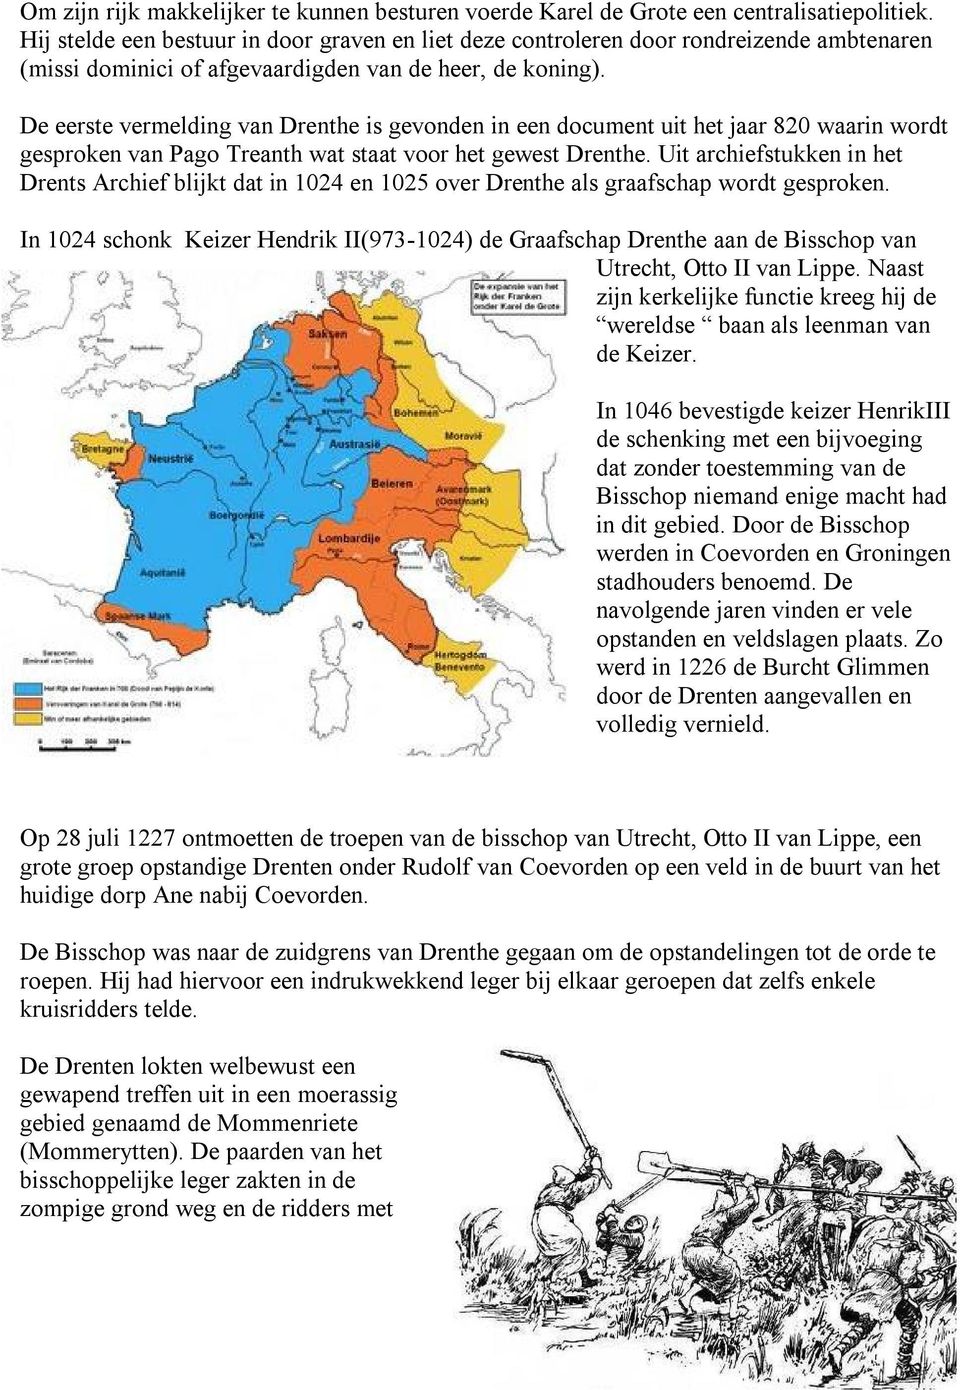 De eerste vermelding van Drenthe is gevonden in een document uit het jaar 820 waarin wordt gesproken van Pago Treanth wat staat voor het gewest Drenthe.